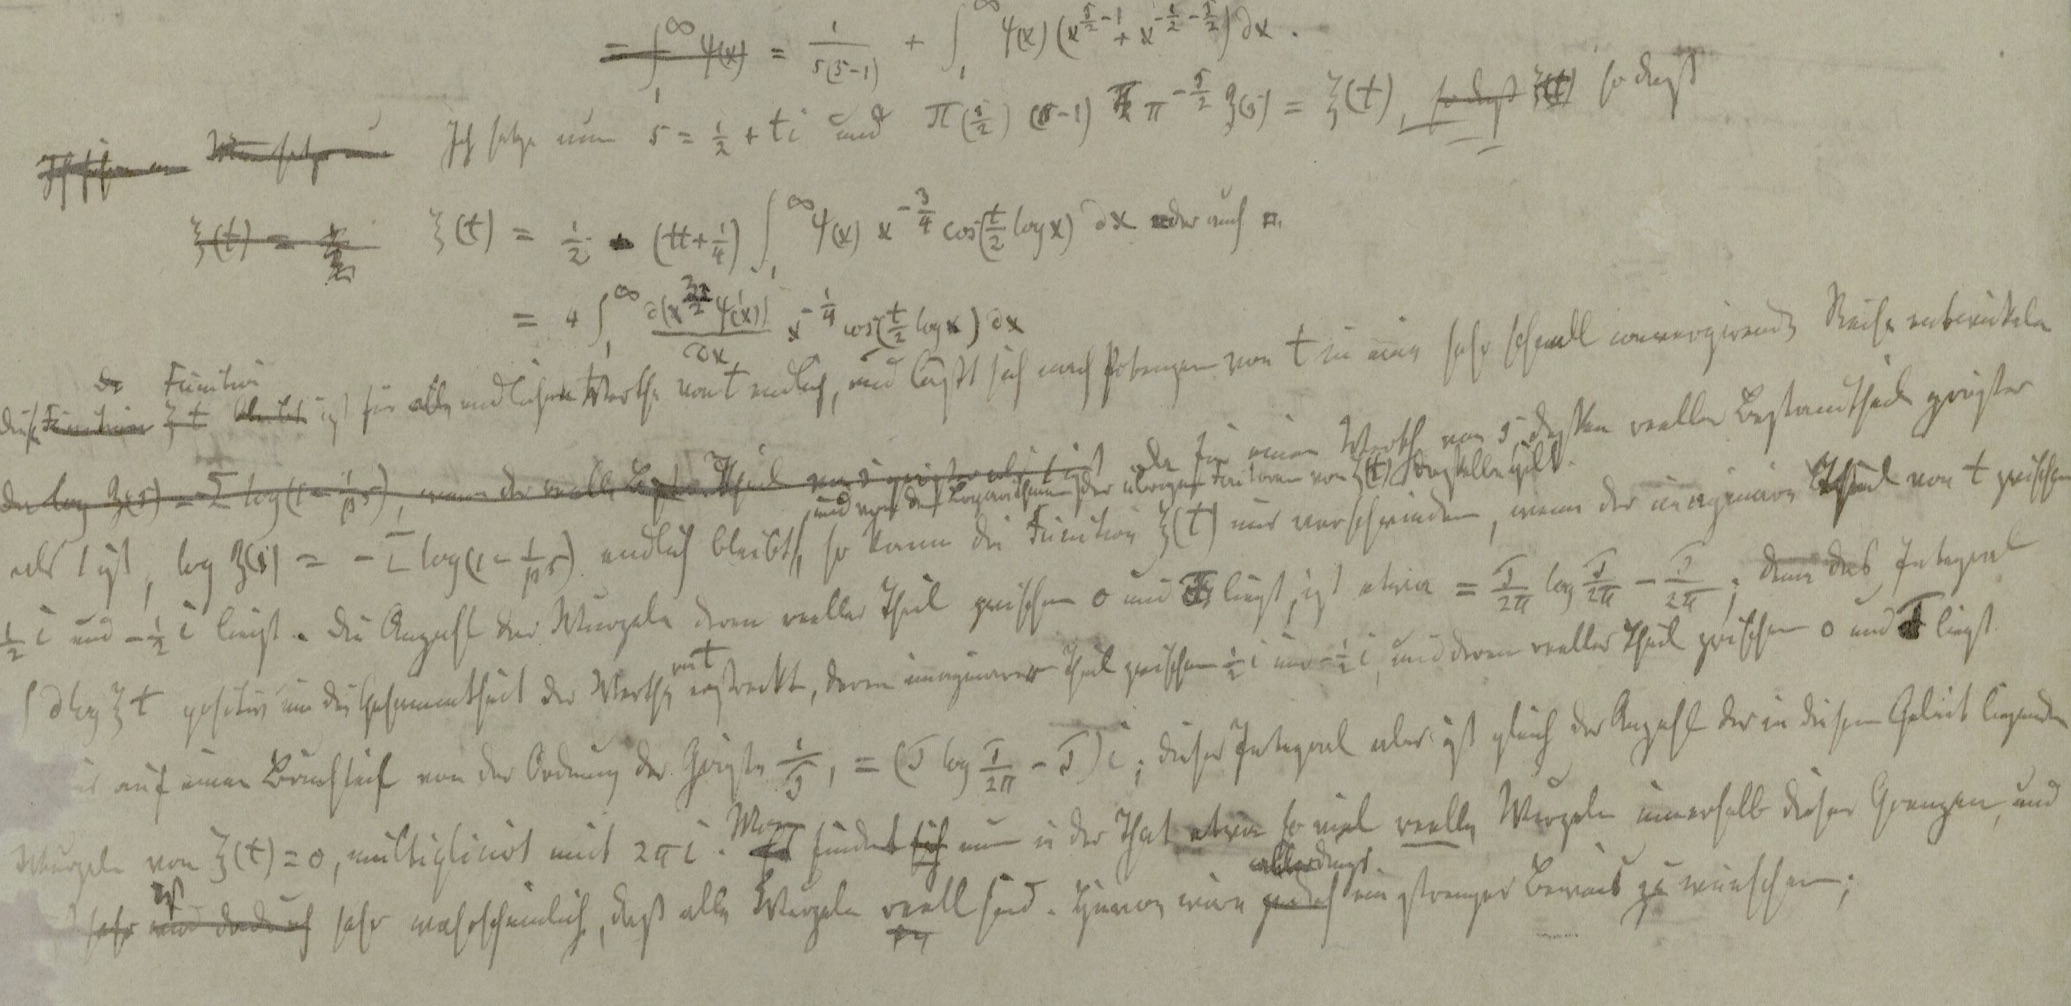  Riemann's notes 